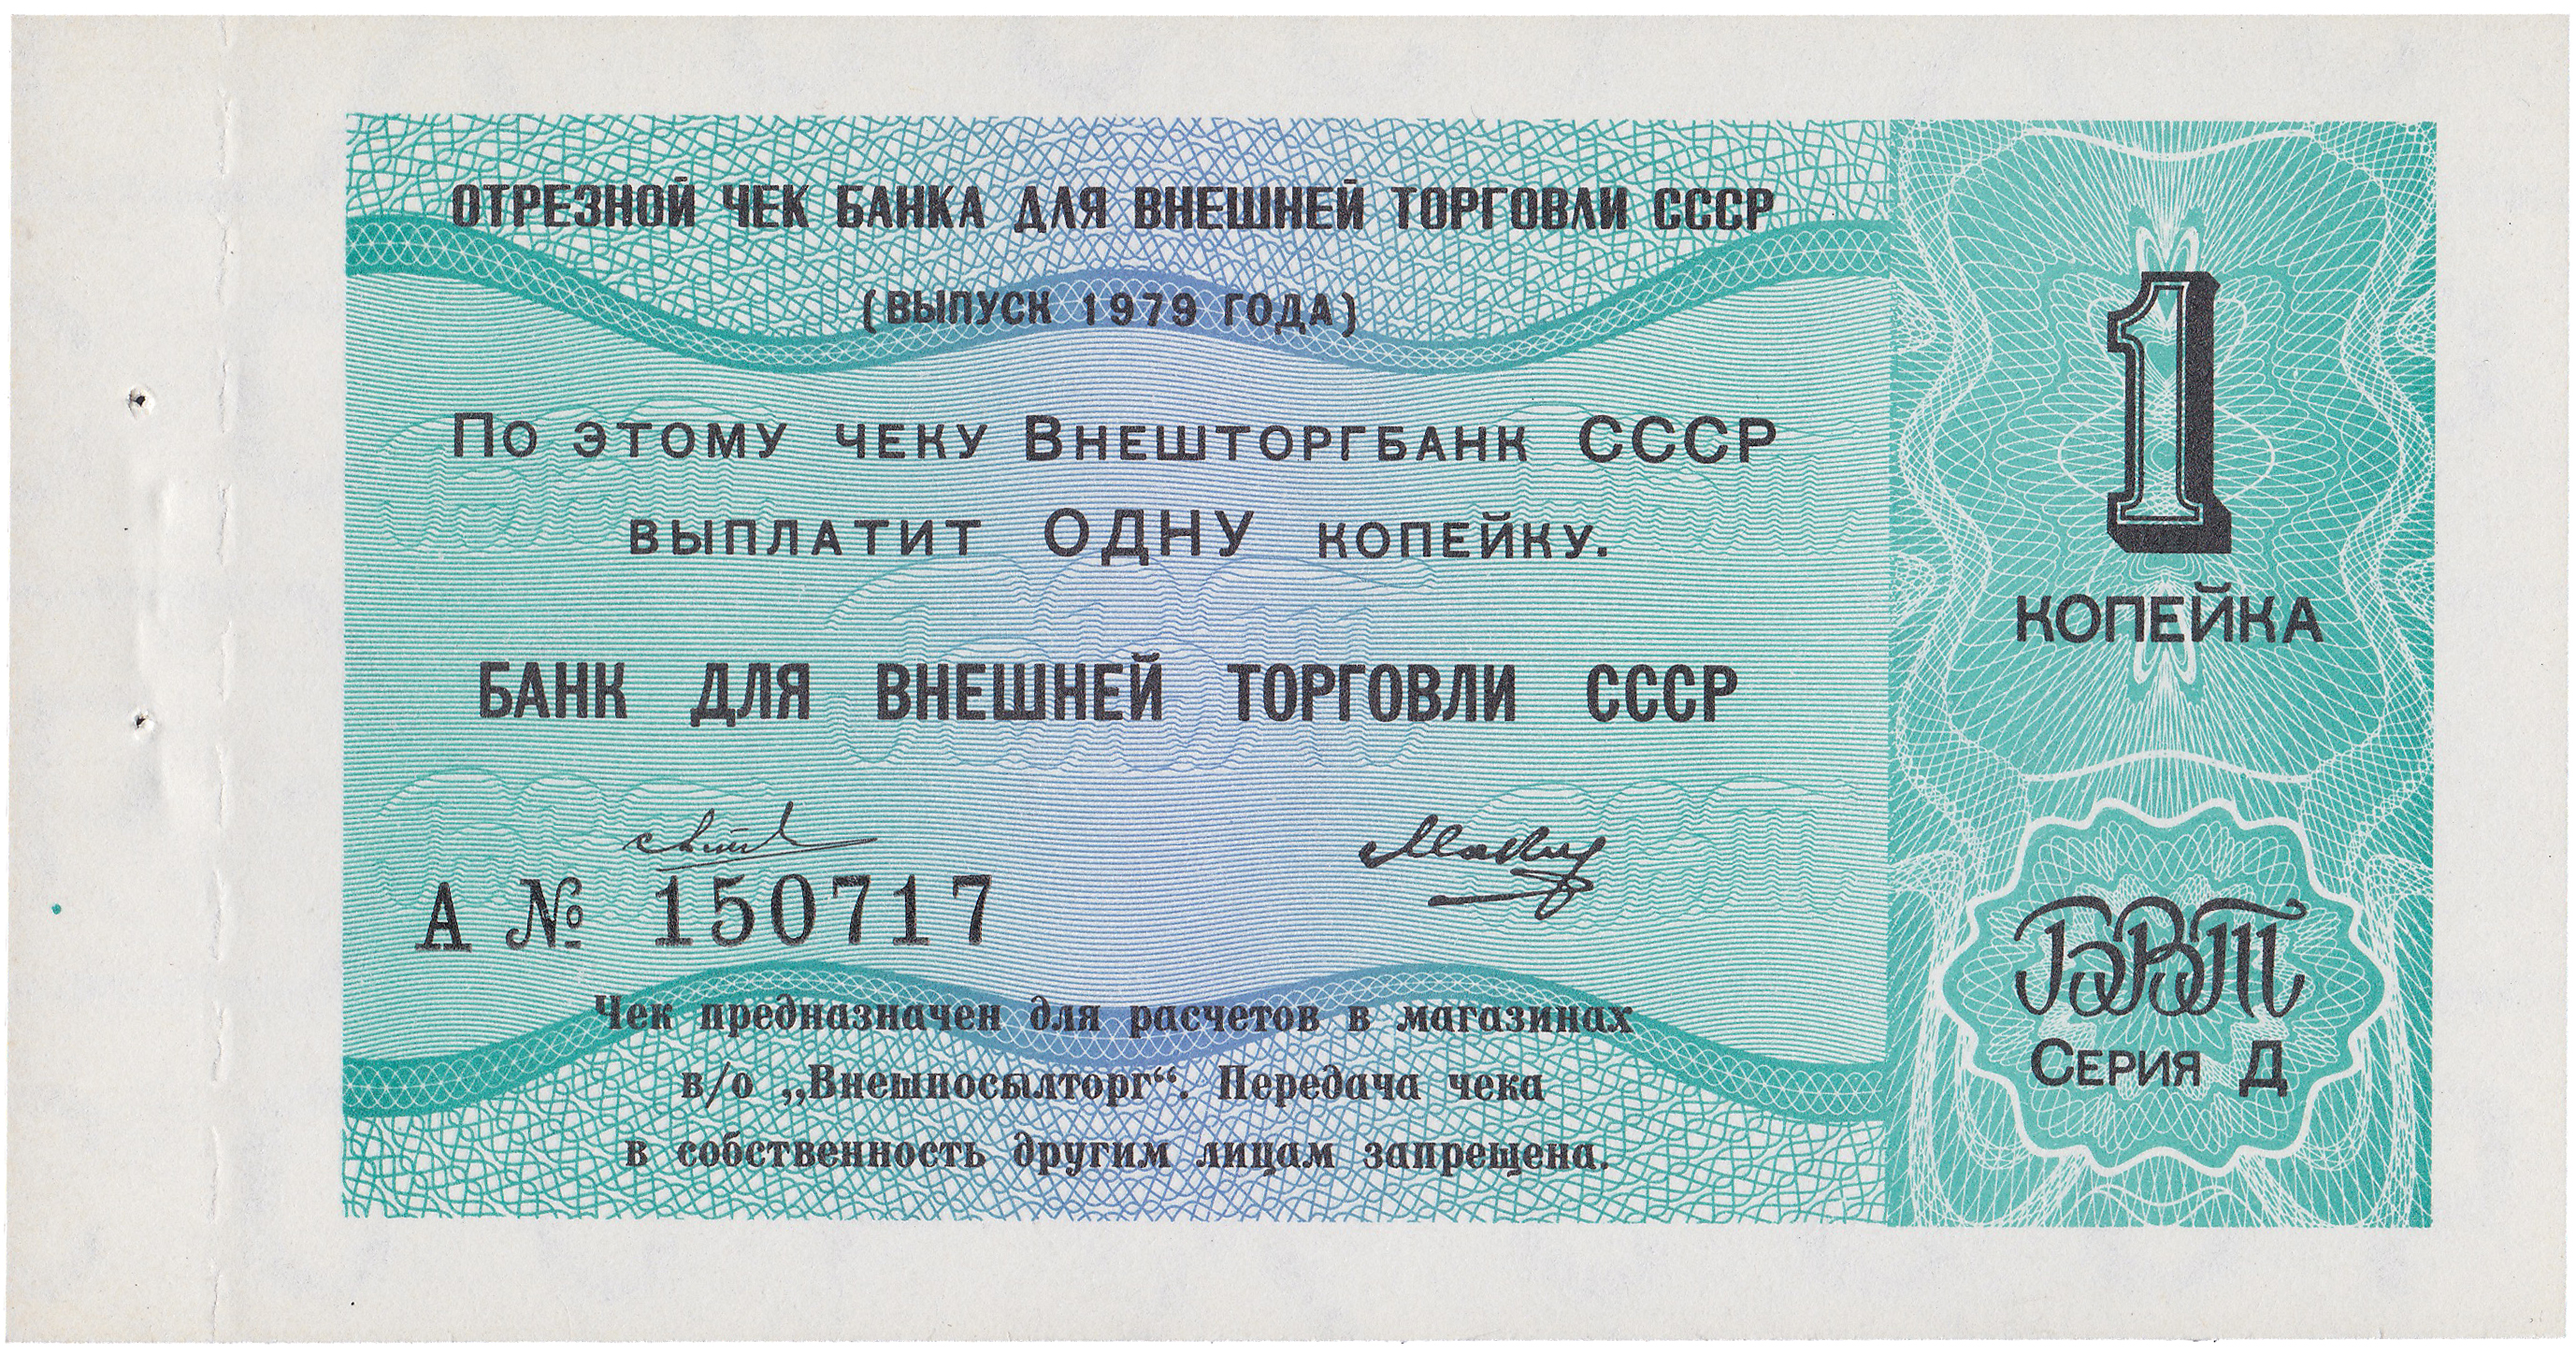 Отрезной чек 1 Копейка 1979 год. Банк для внешней торговли СССР. Серия Д, Литера А